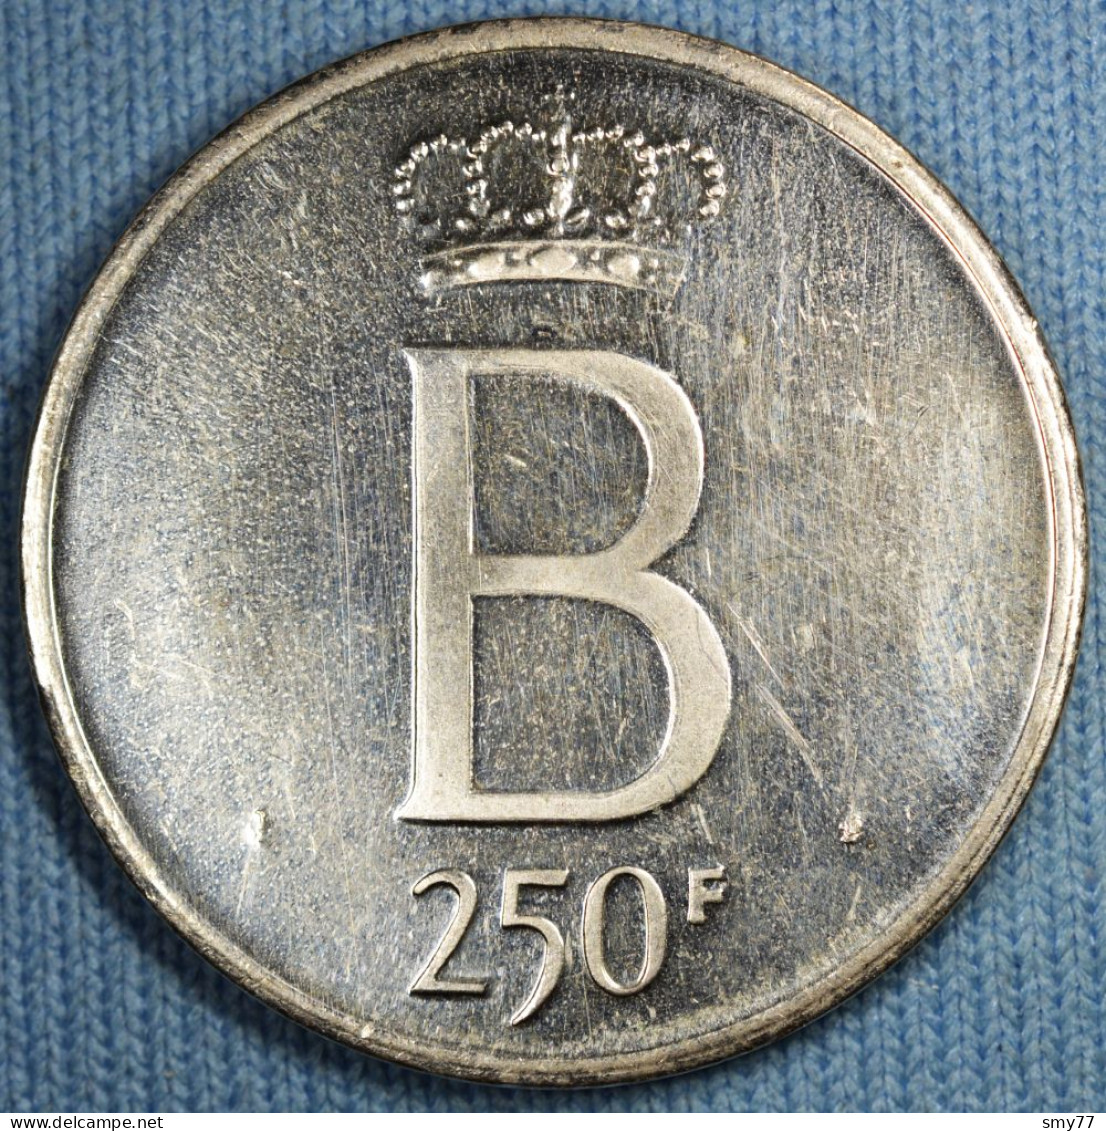 Belgique • 250 Francs 1976 Fl • Tranche étoilée - Petit B - 5 Droit - Flan Poli • [24-265] - 250 Frank